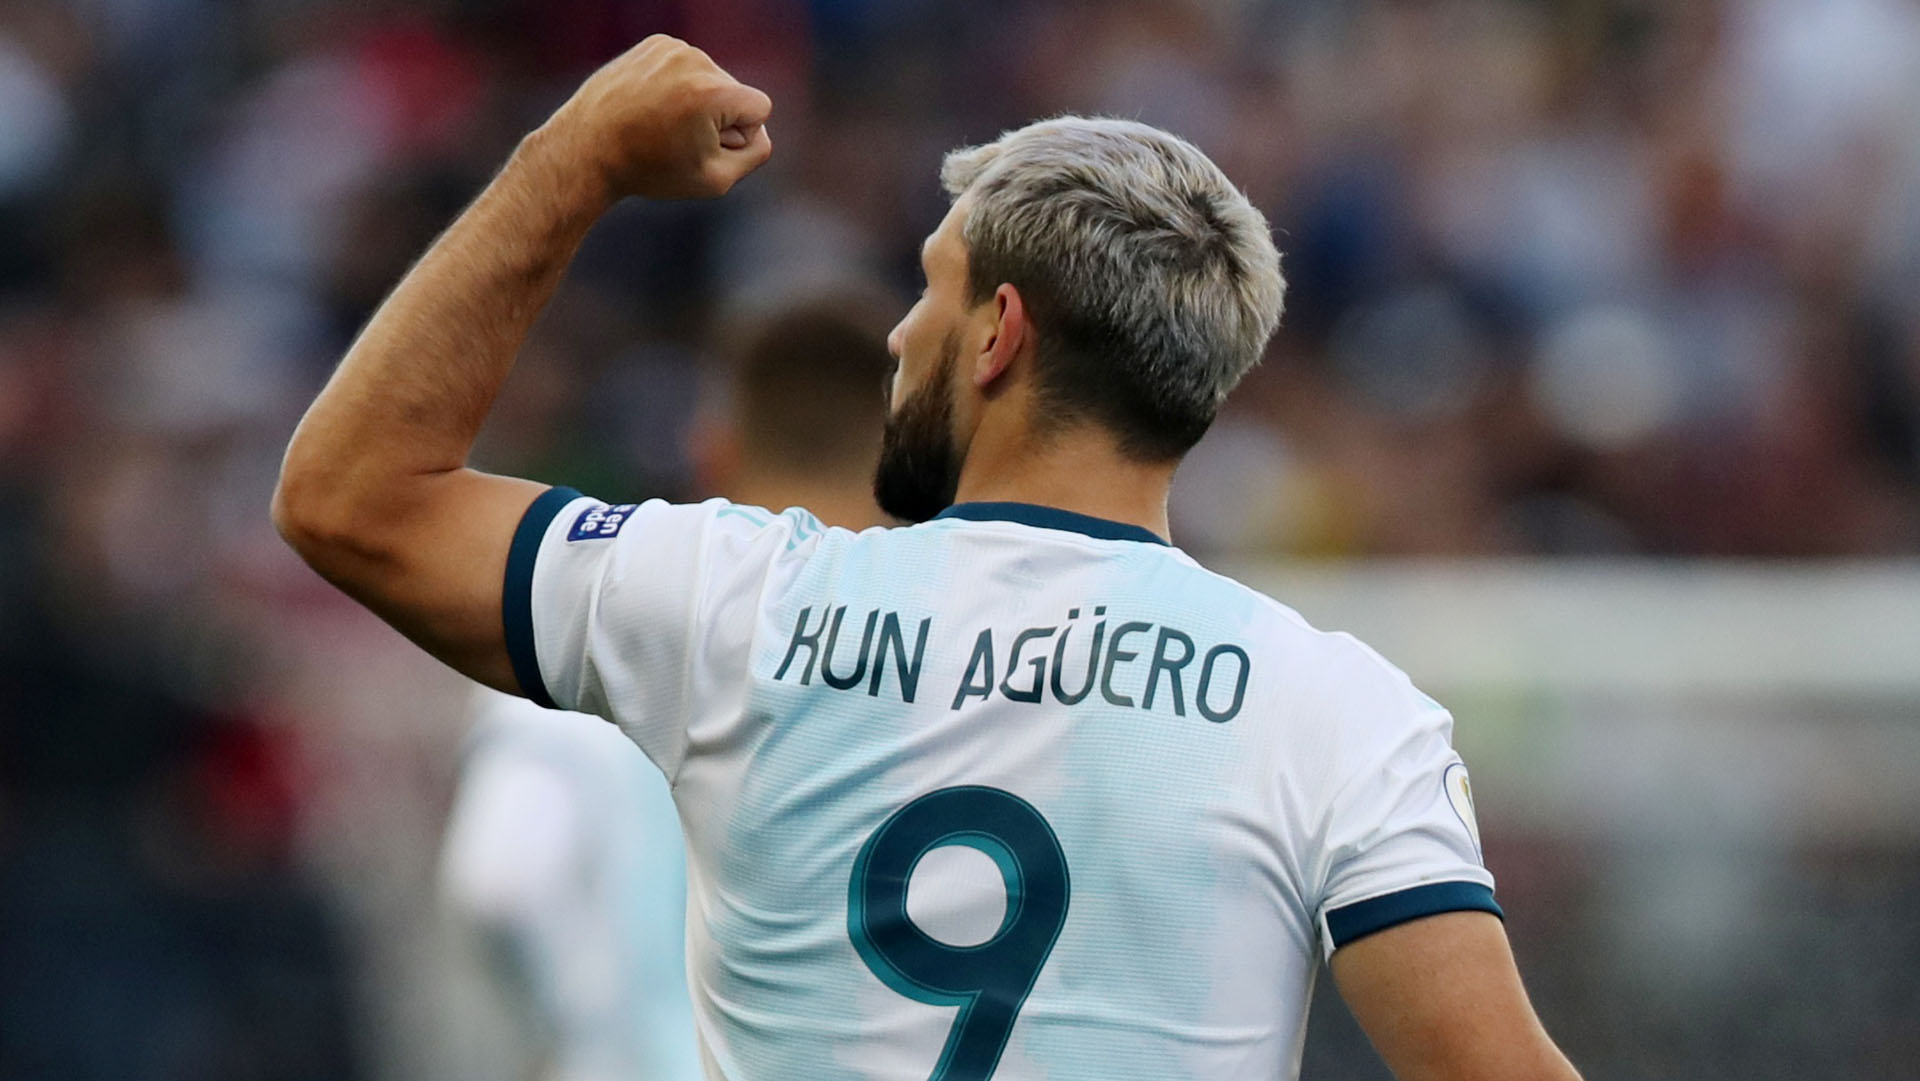 El Kun Agüero fue uno de los mejores goleadores argentinos de todos los tiempos (REUTERS/Amanda Perobelli)